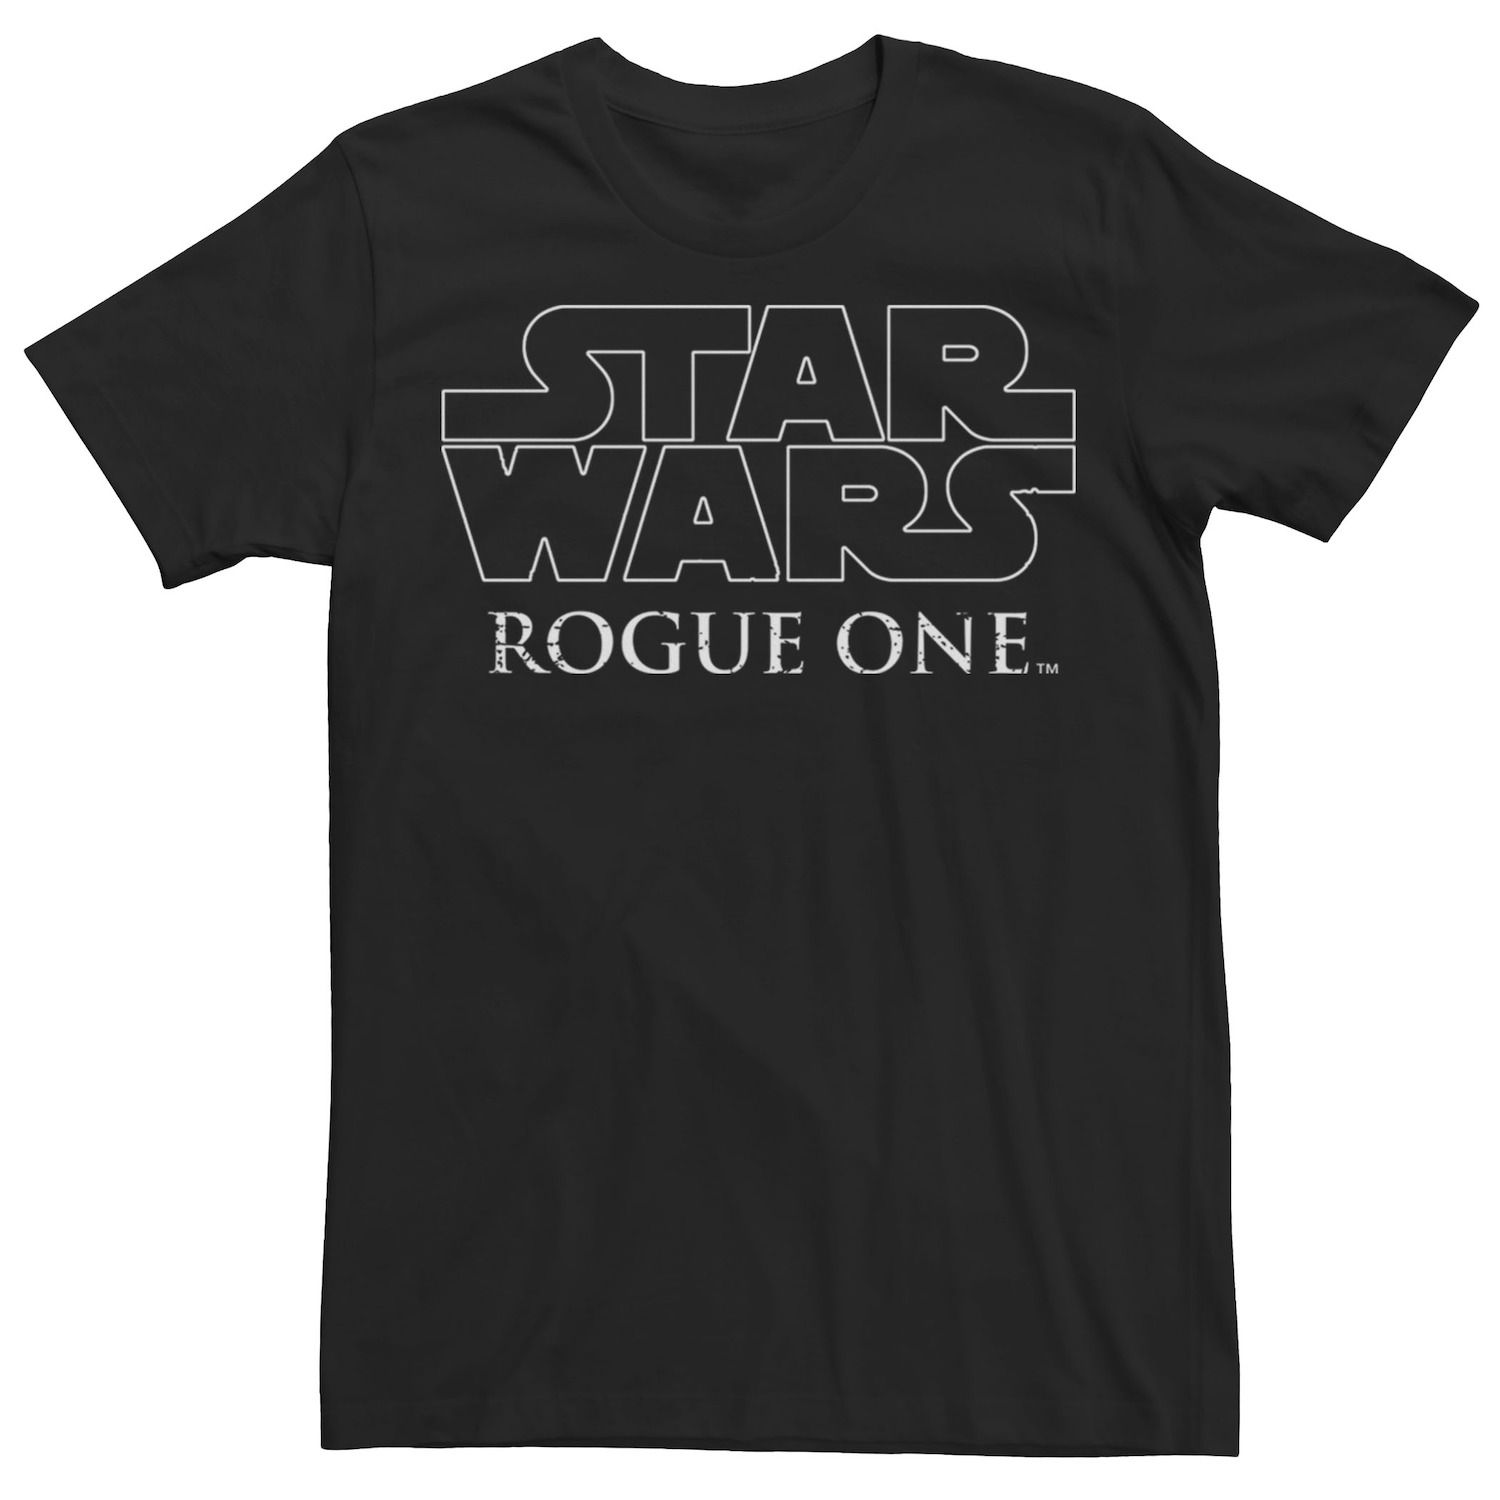 Мужская простая футболка с логотипом Star Wars Rogue One Licensed Character мужская футболка с логотипом rogue one star wars